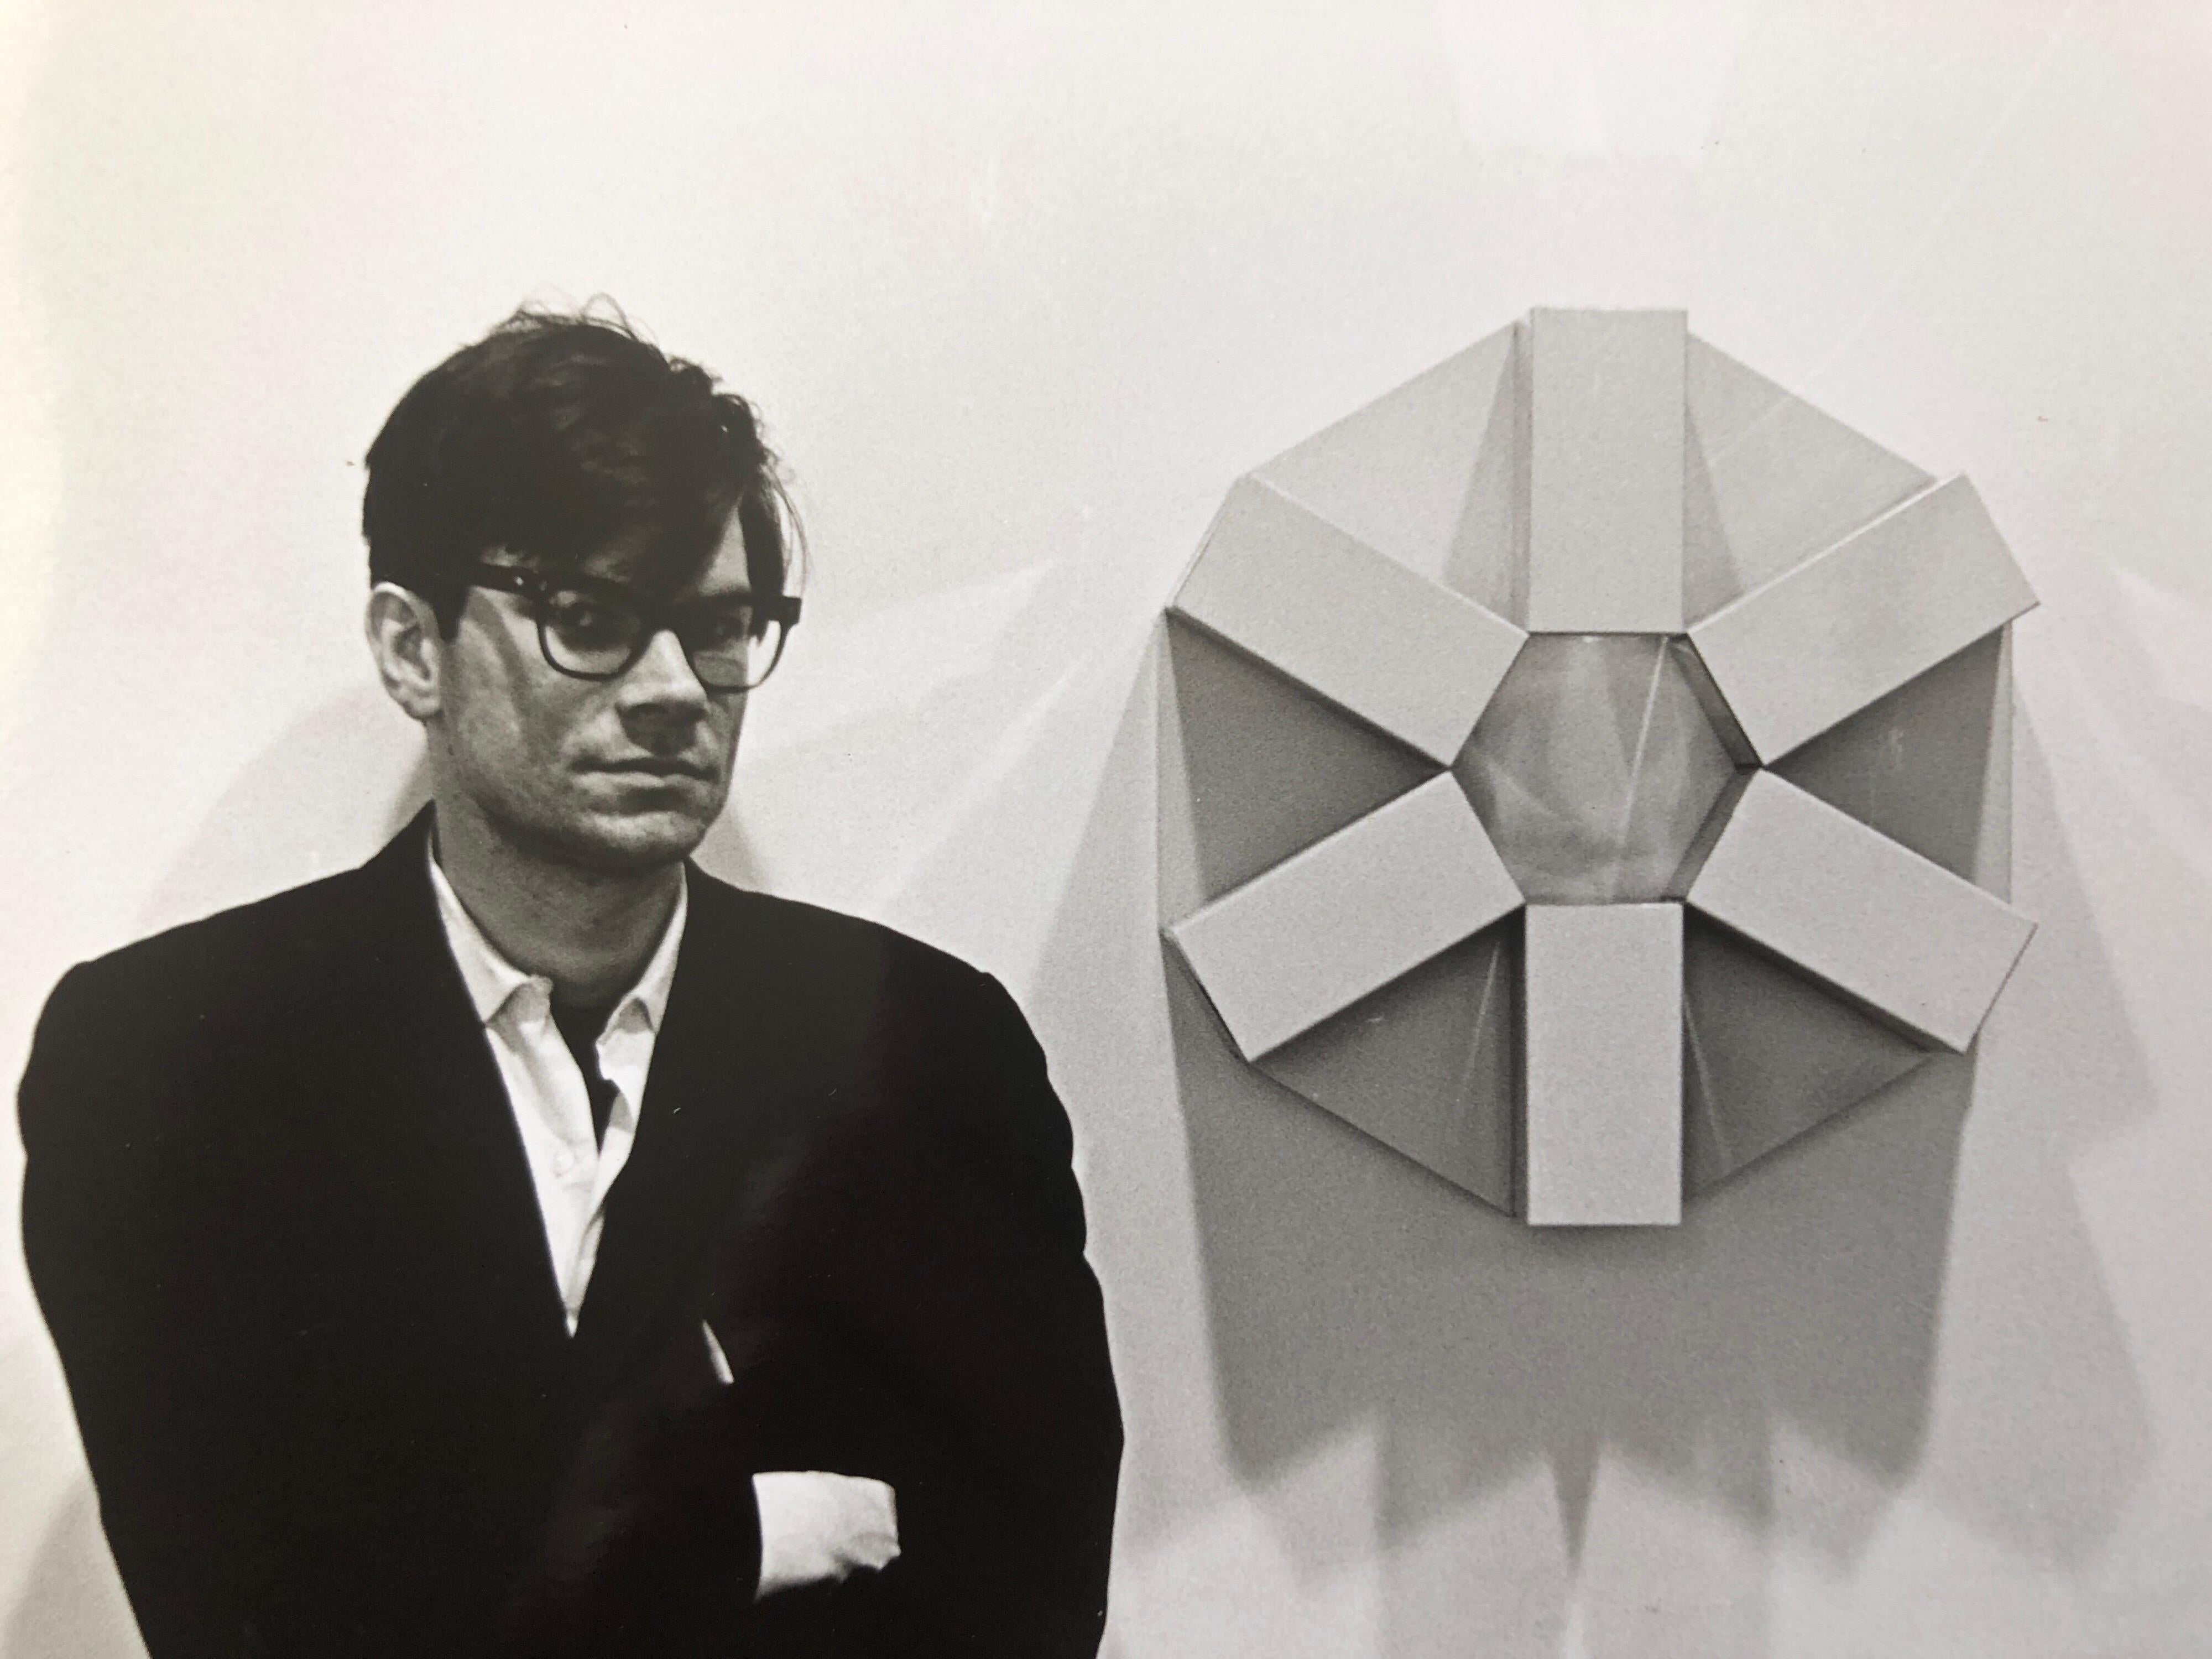 Robert Smithson (2 janvier 1938 - 20 juillet 1973) est un artiste américain qui a utilisé la photographie en relation avec la sculpture et le land art.
signé à l'encre, avec le cachet du photographe au verso et le titre écrit à la main.

Sur une